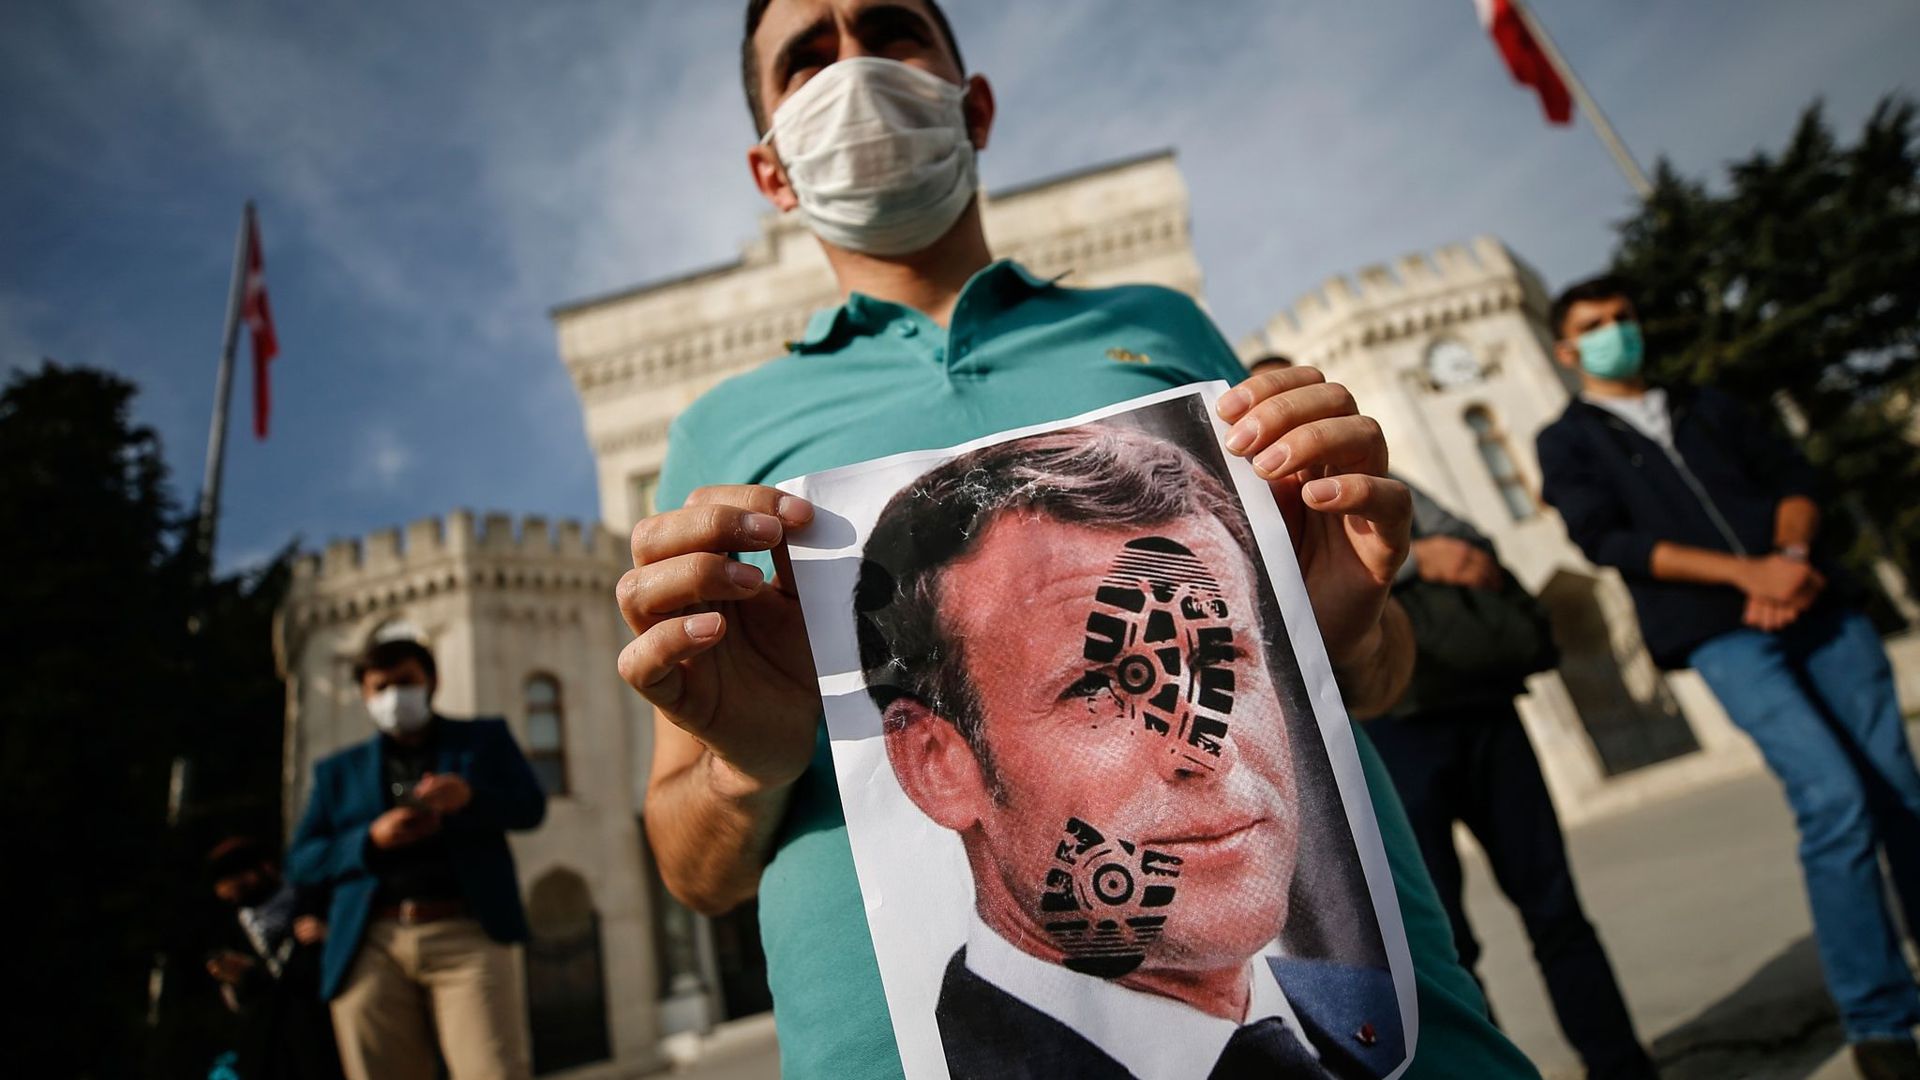 Ein junger Mann hält ein mit einem Schuhabdruck versehenes Foto von Emmanuel Macron, Präsident von Frankreich, in die Kamera. Recep Tayyip Erdogan, Präsident der Türkei, griff Macron ein zweites Mal verbal an und warf ihm Islamfeindlichkeit vor.